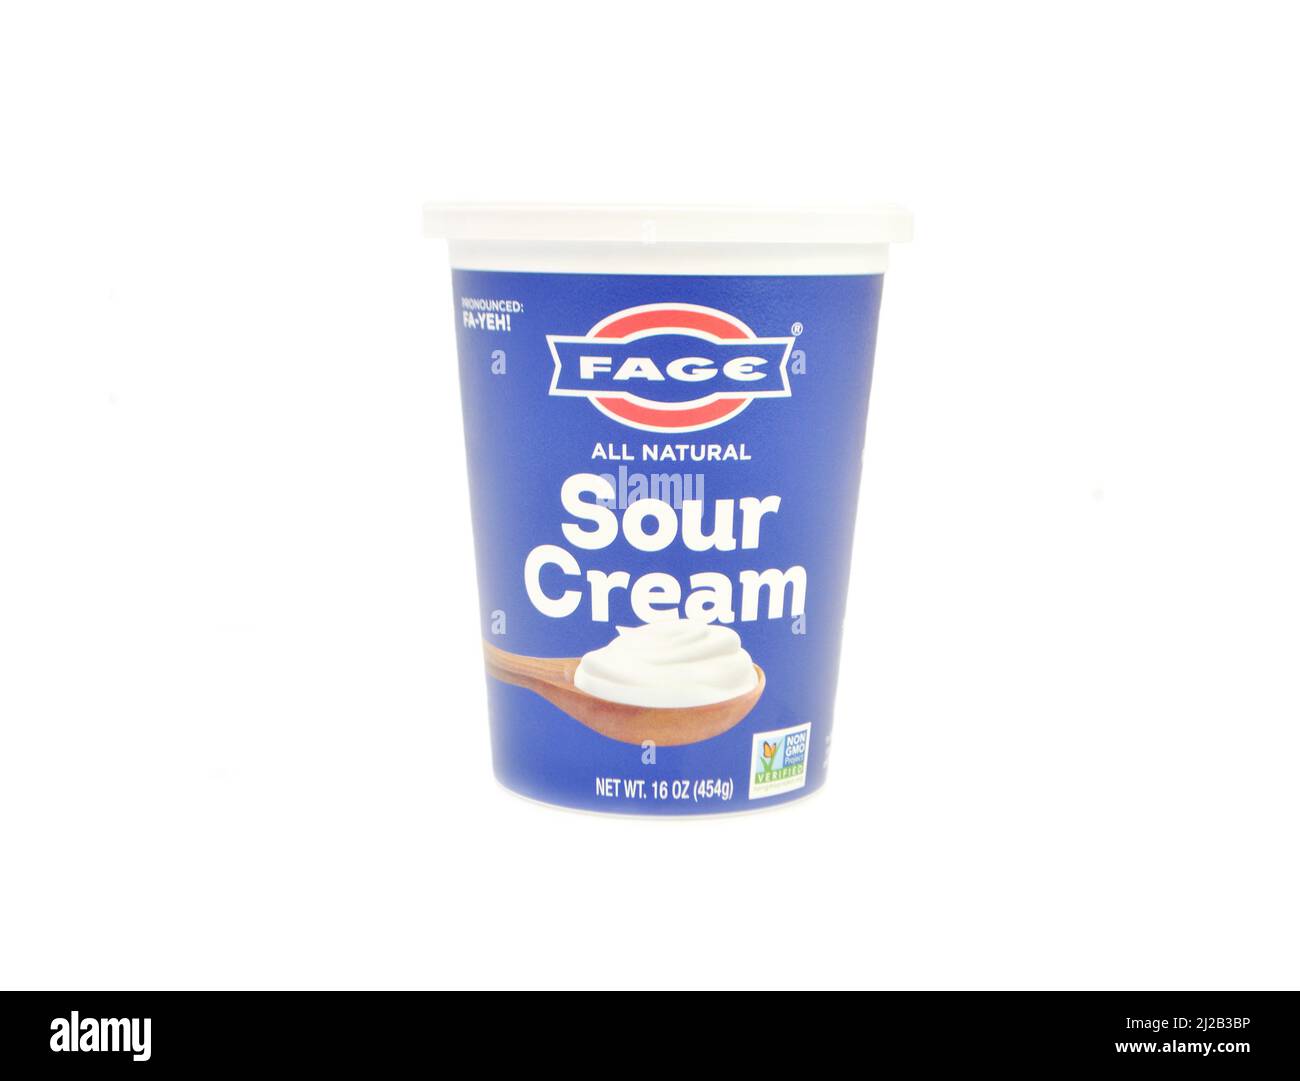 FaGe Brand Sour Cream isoliert auf einem weißen Hintergrund mit Copy Space Stockfoto